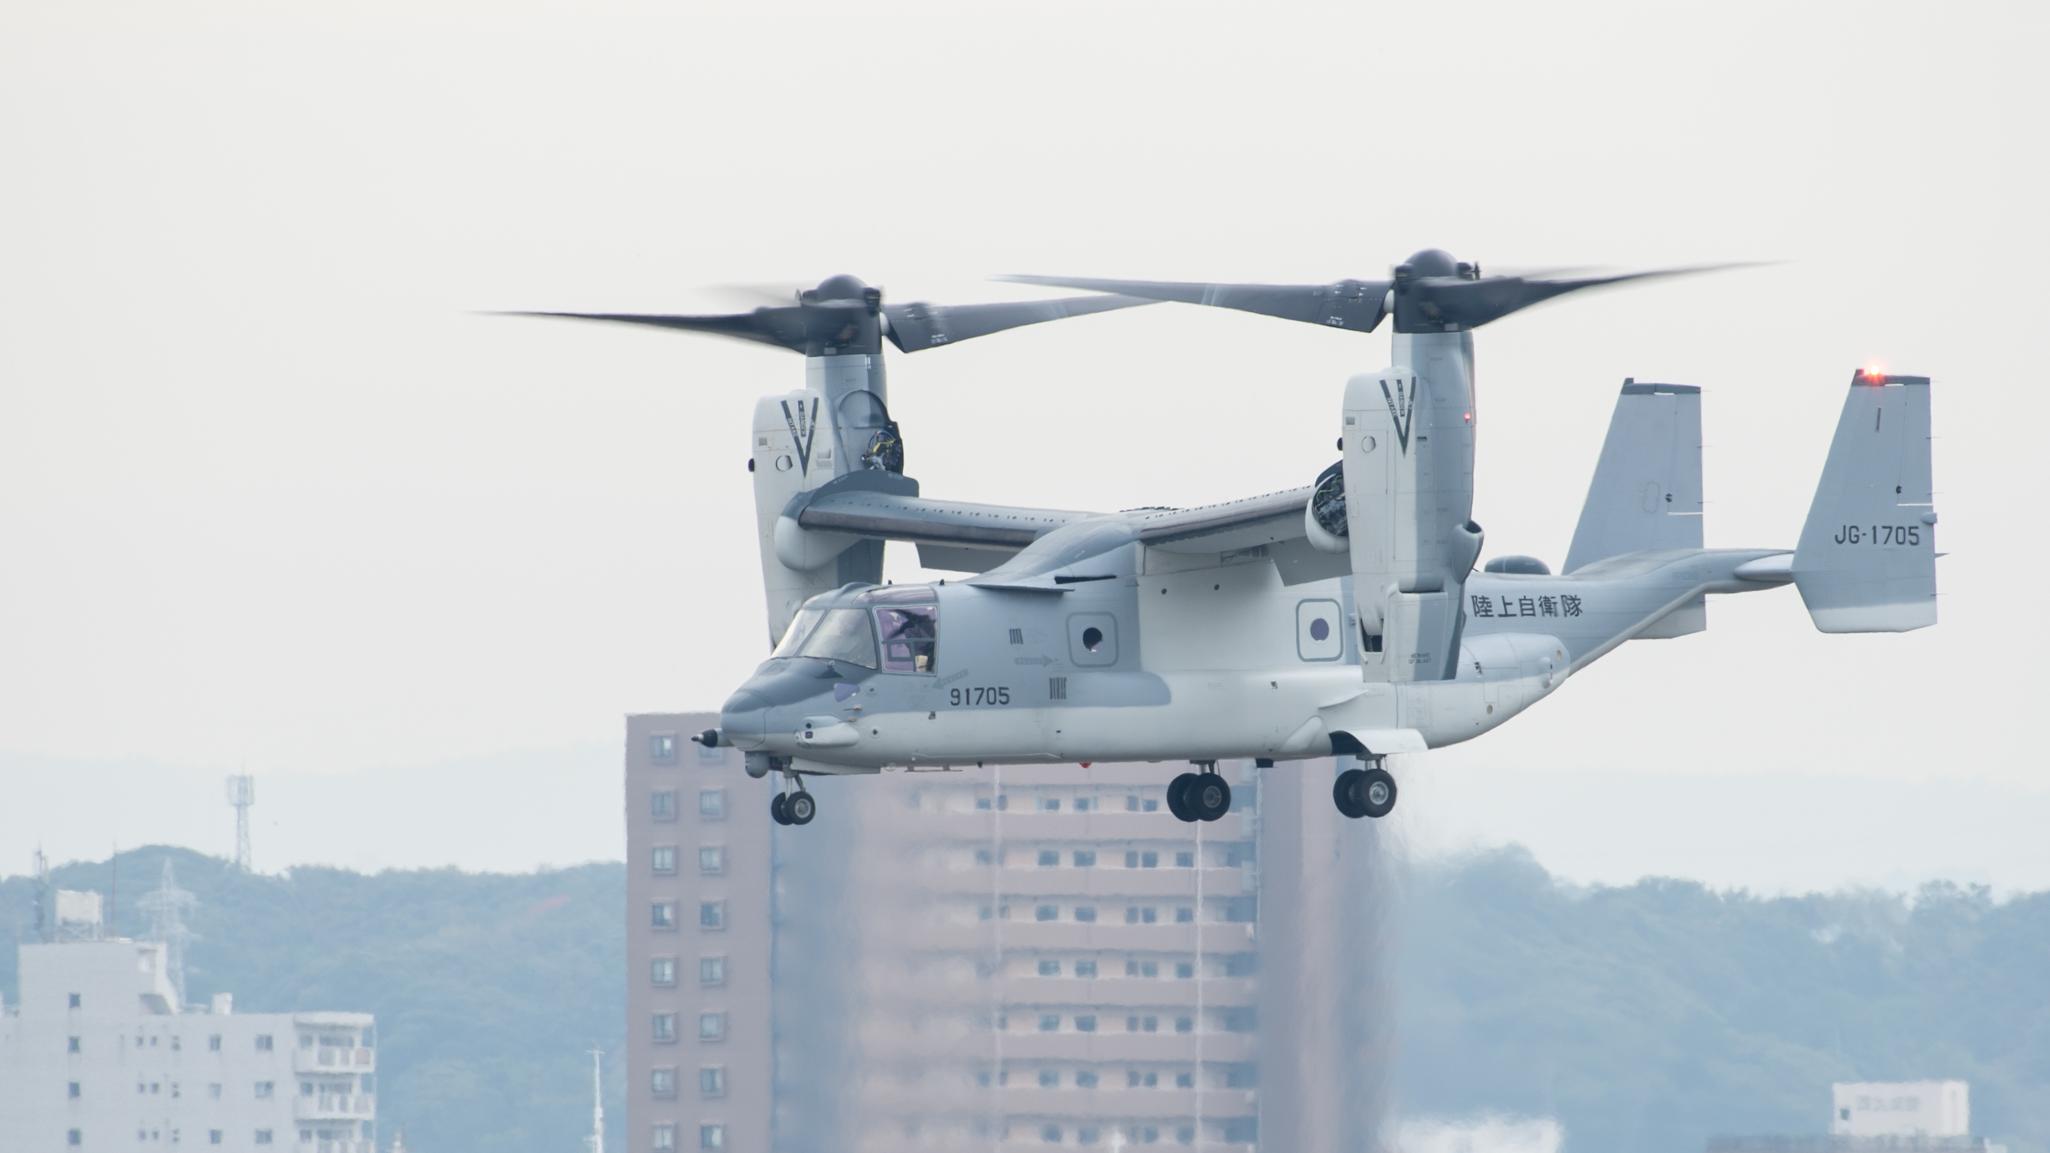 Japan Ground Self Defense Force V-22 Osprey